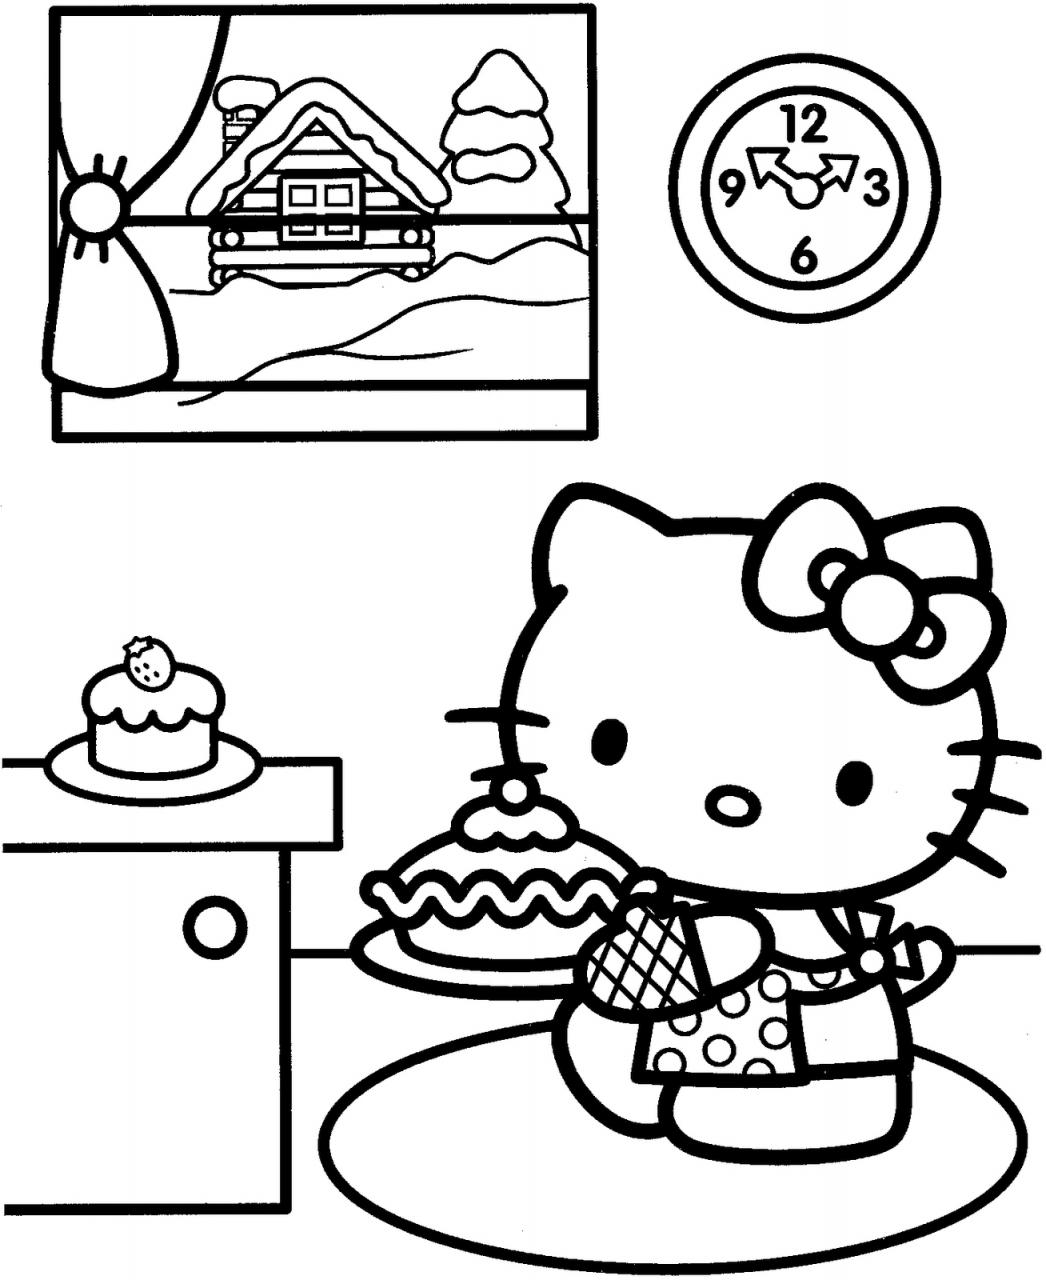 tron bo tranh to mau hello kitty dep de thuong nhat 27 - Trọn bộ tranh tô màu Hello Kitty đẹp, dễ thương nhất